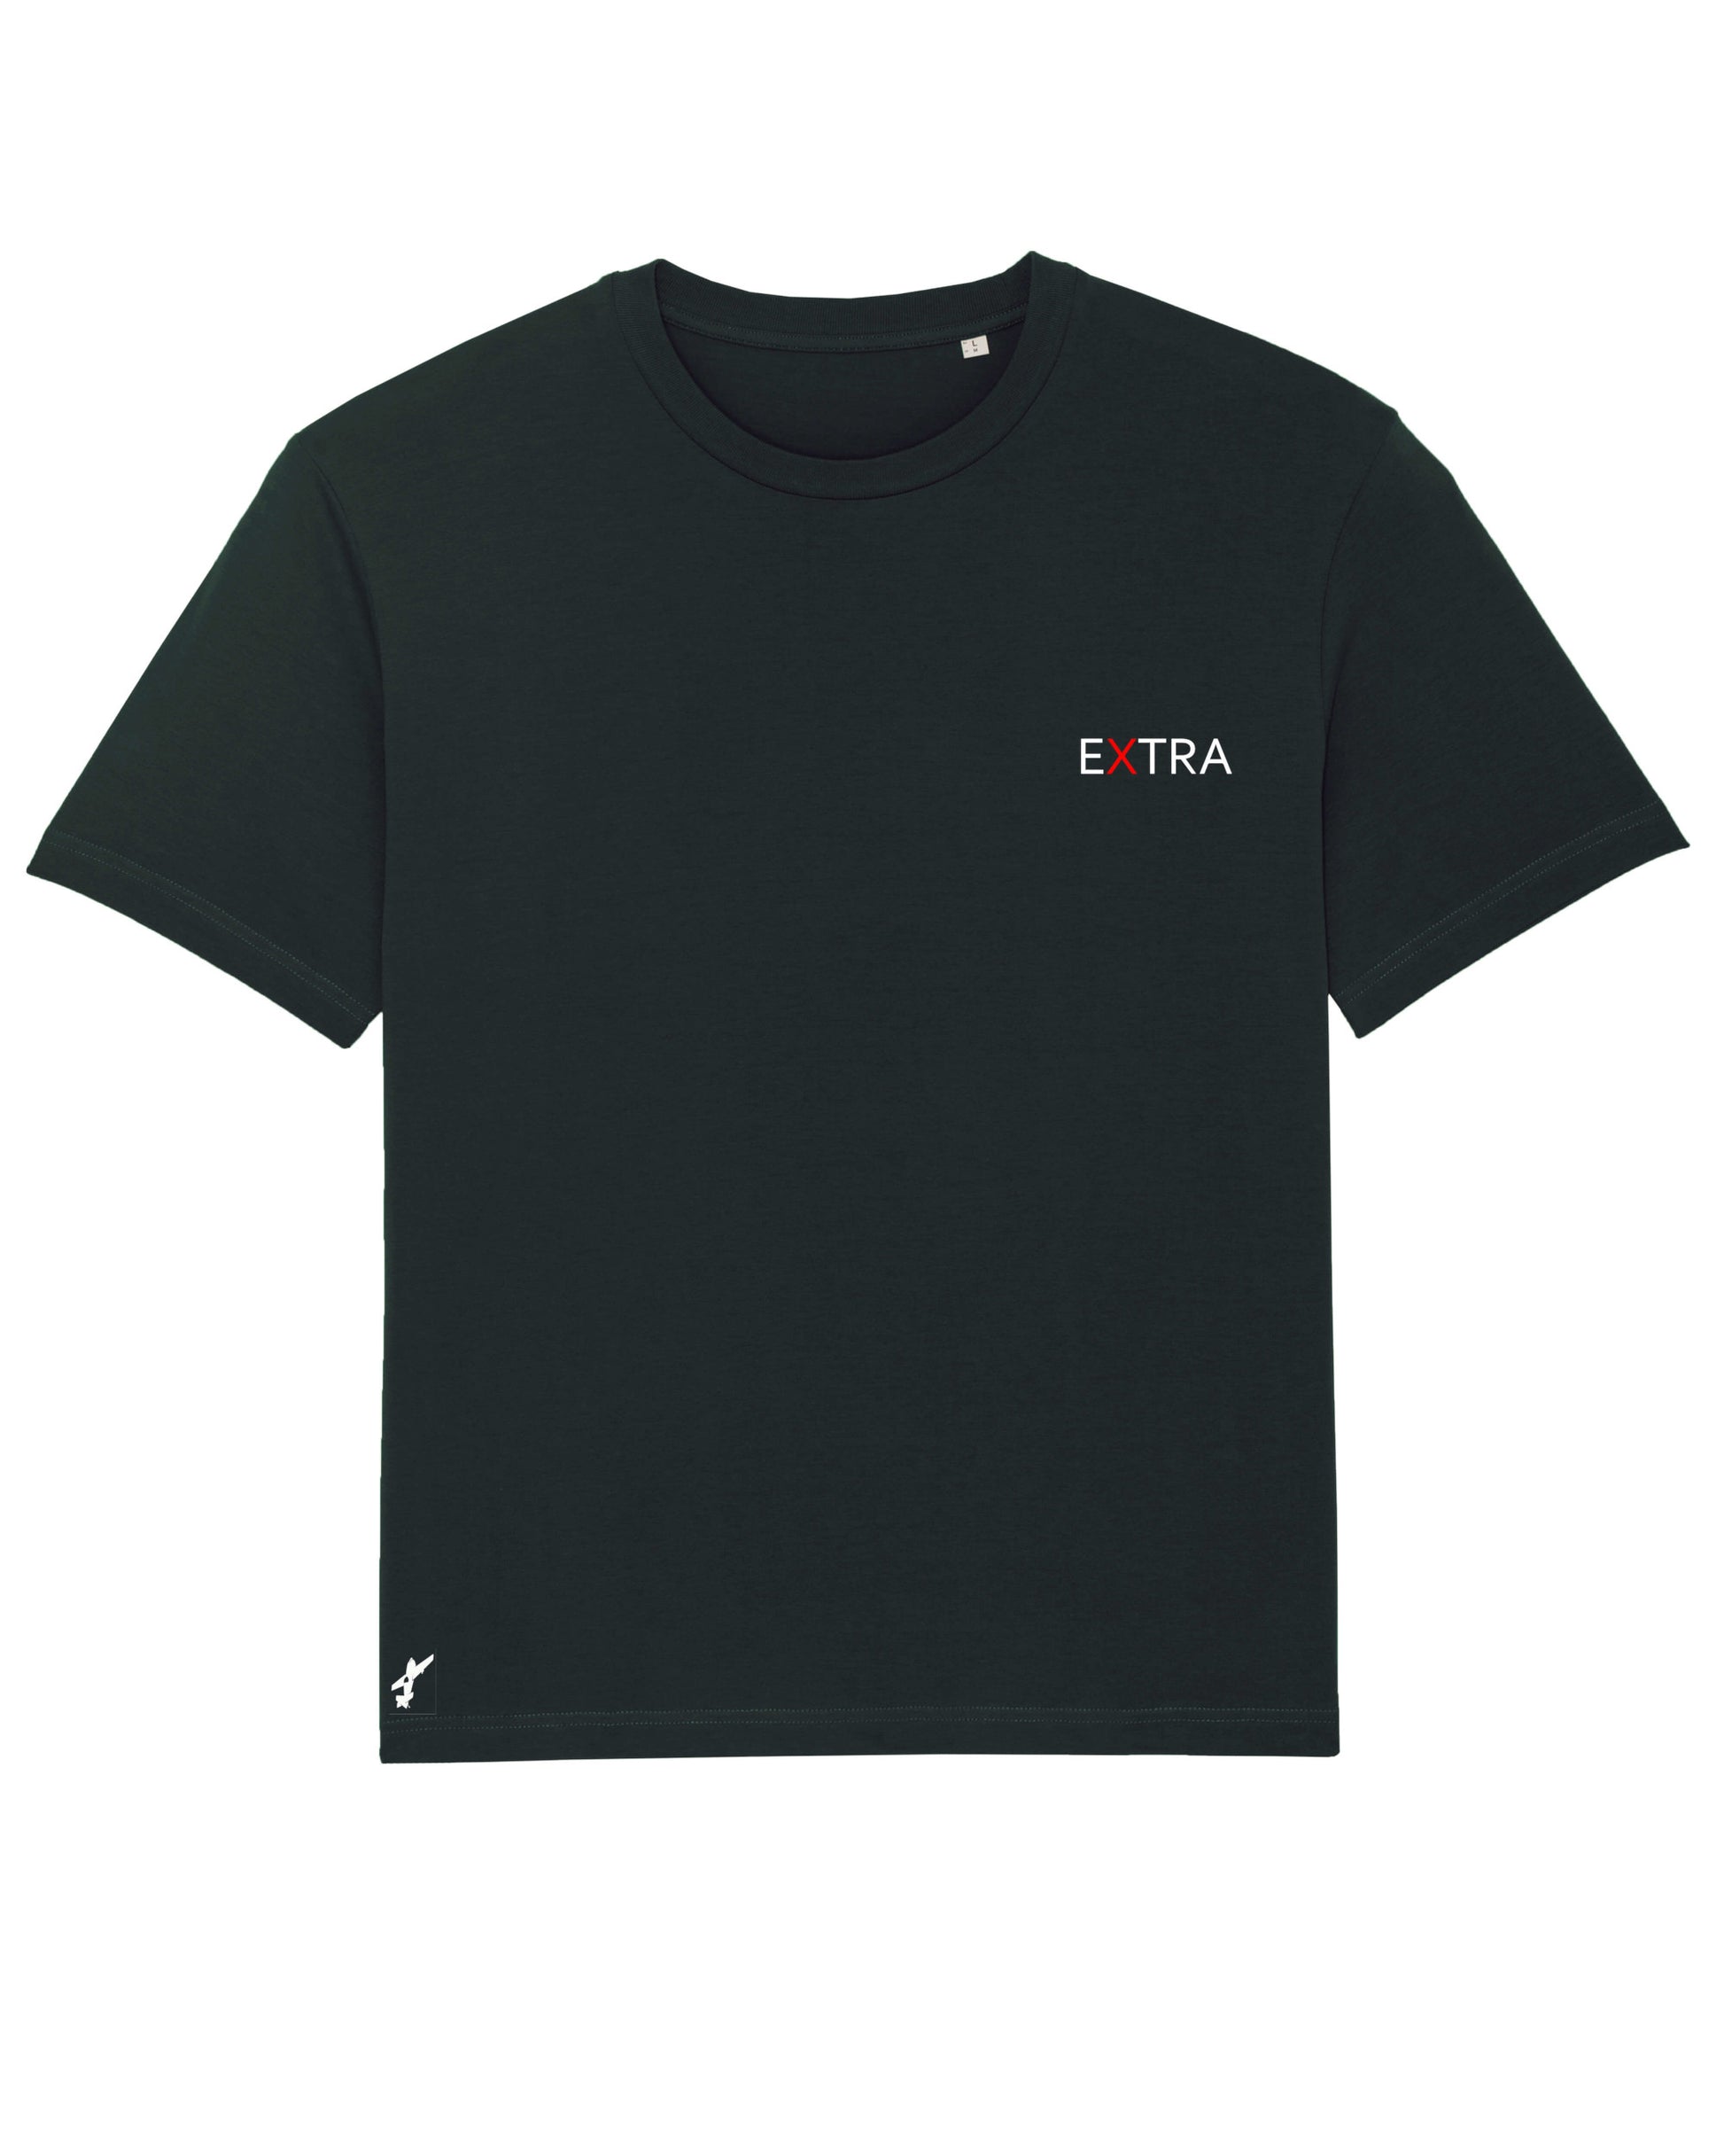 Produktbild eines schwarzen T-Shirts: Das ikonische Extra-Unternehmenslogo befindet sich herzseitig auf der Brust. Am unteren Saum auf der rechten Seite ist eine kleine Flugzeugapplikation eingestickt, die subtile Abenteuerlust vermittelt.